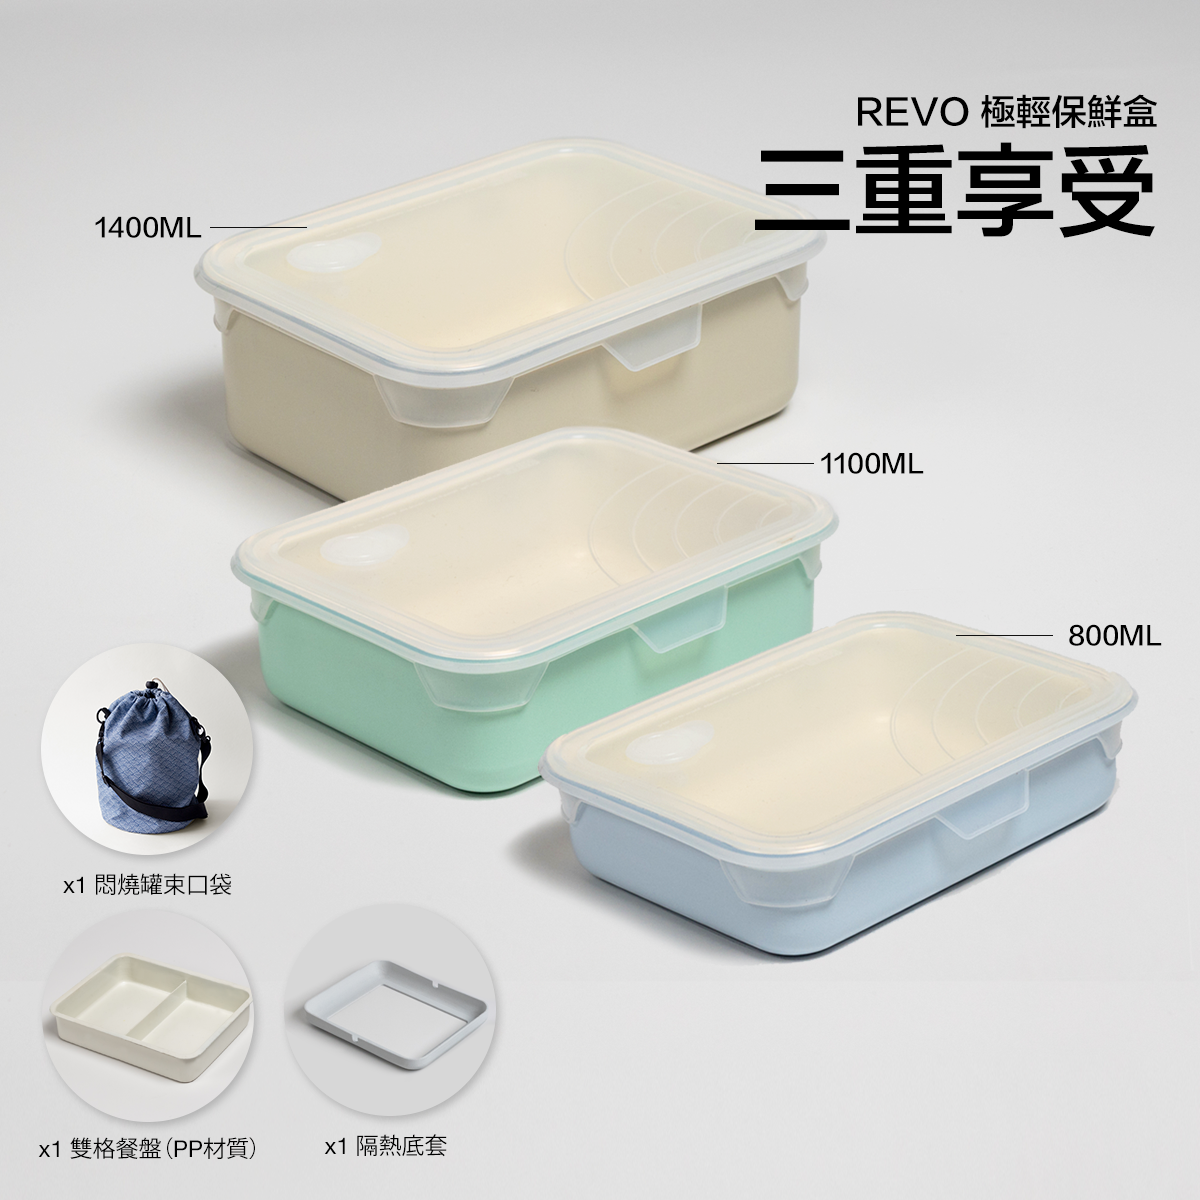 三重享受 - Revo 極輕保鮮盒